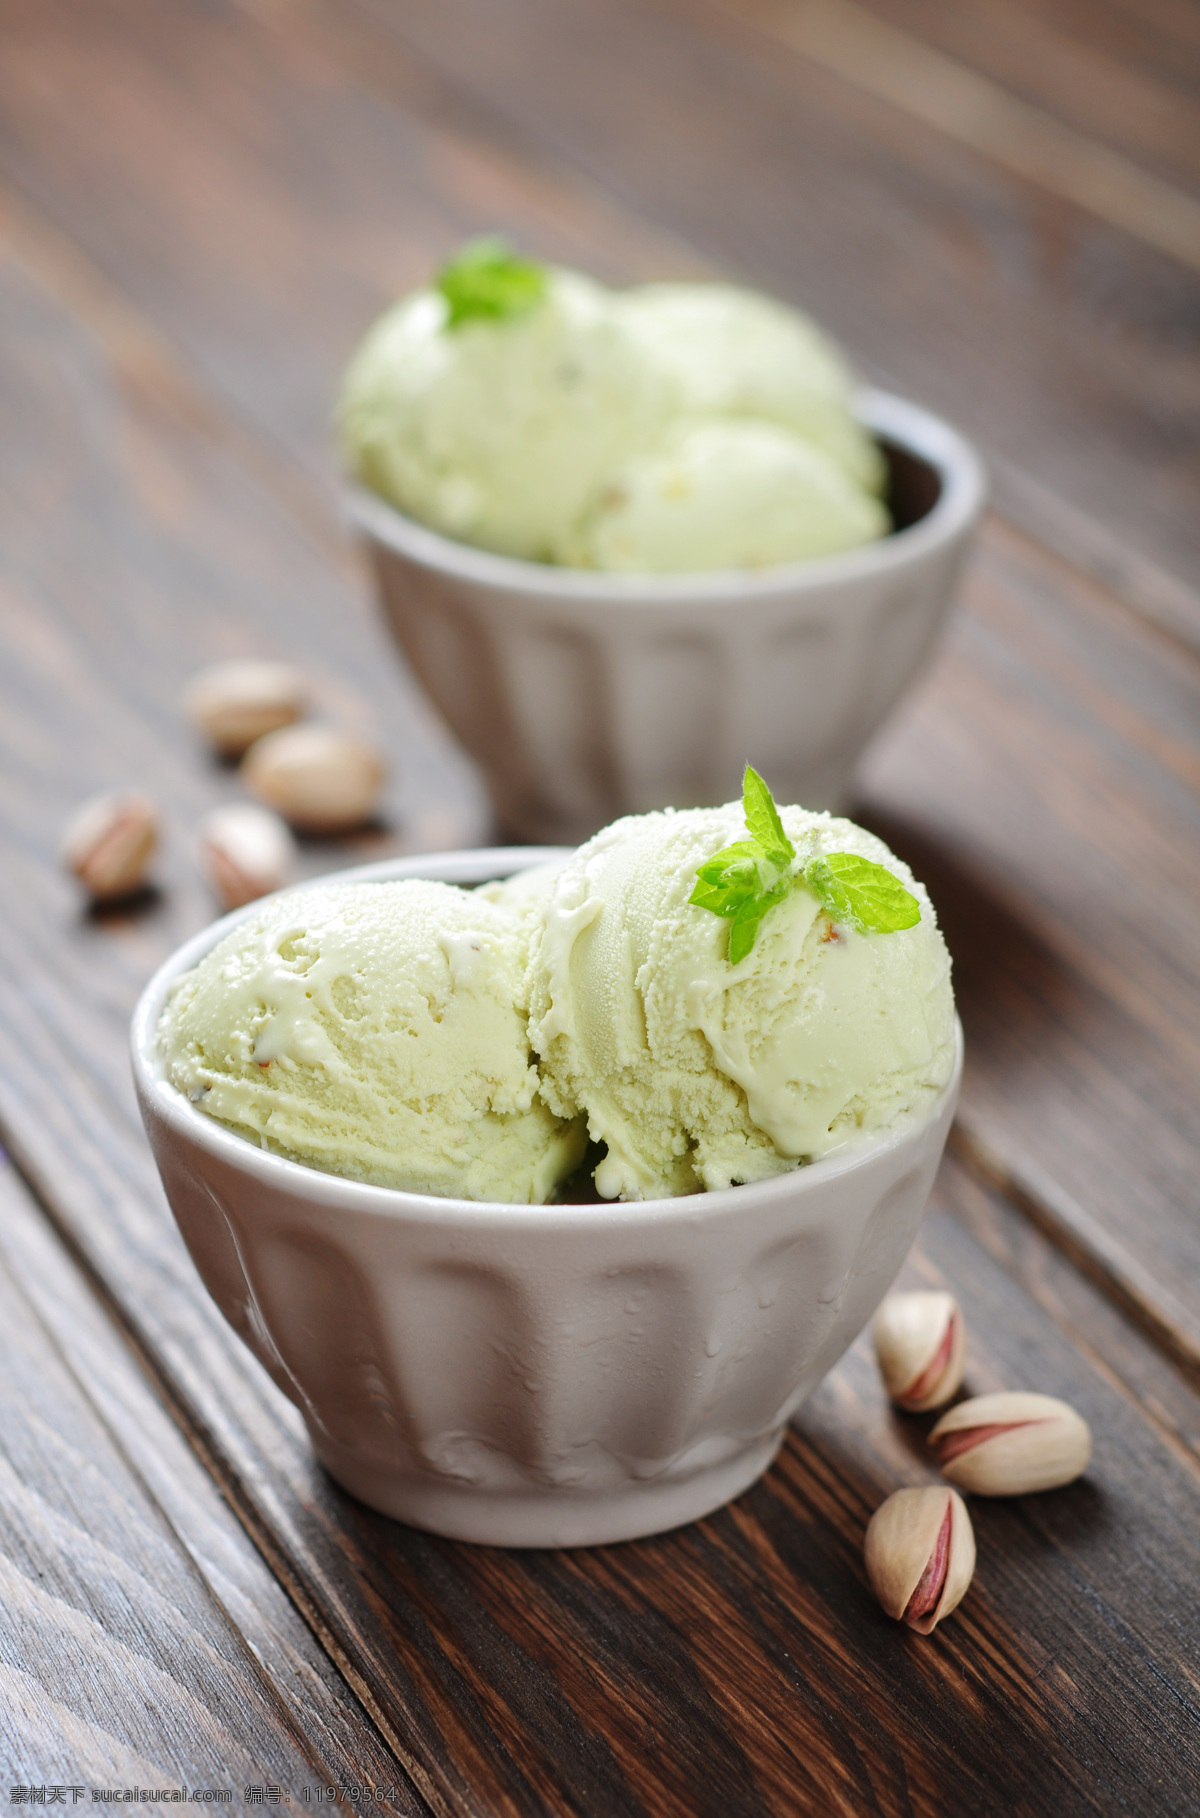 开心果 冰淇淋 冰激凌 甜品美食 冰淇淋摄影 酒类图片 餐饮美食